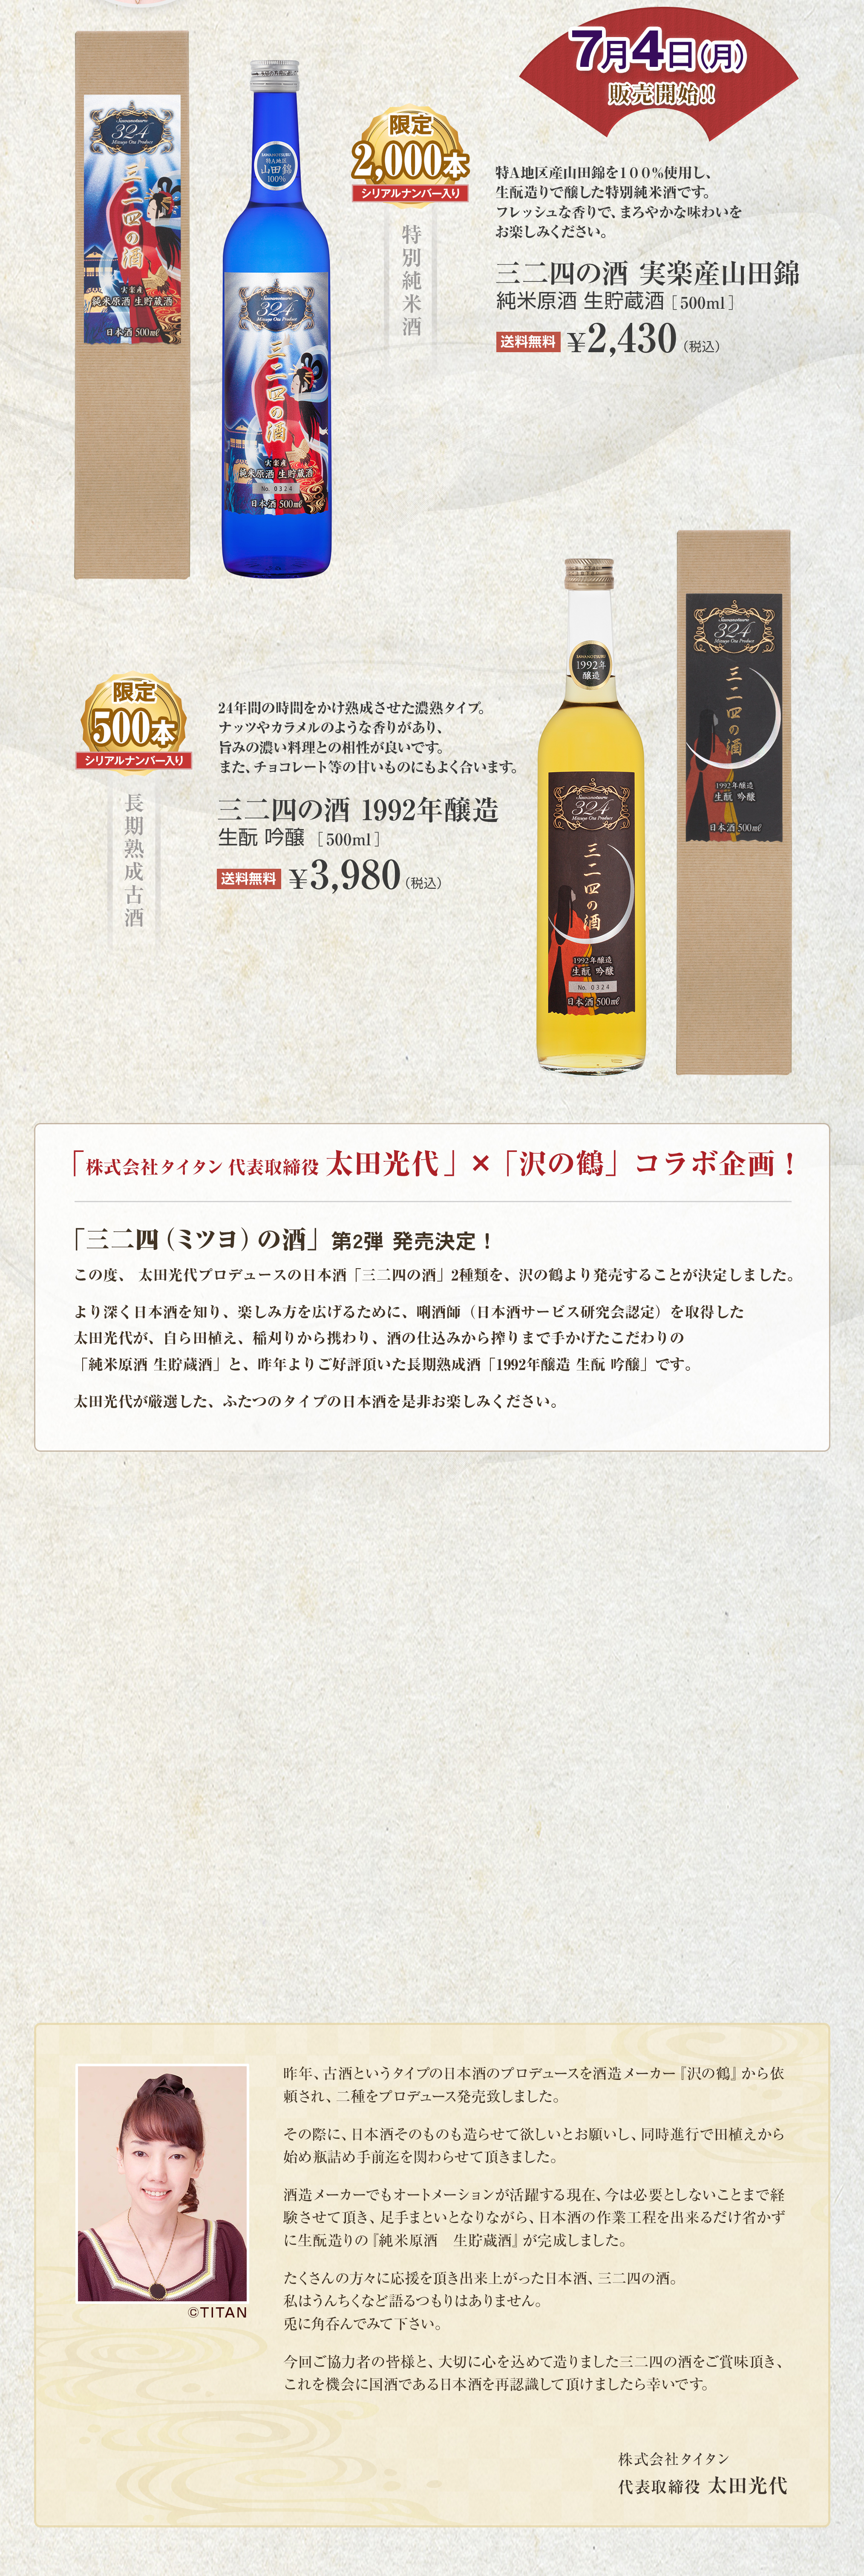 太田光代プロデュース「沢の鶴」の醸造の日本酒 三二四の酒